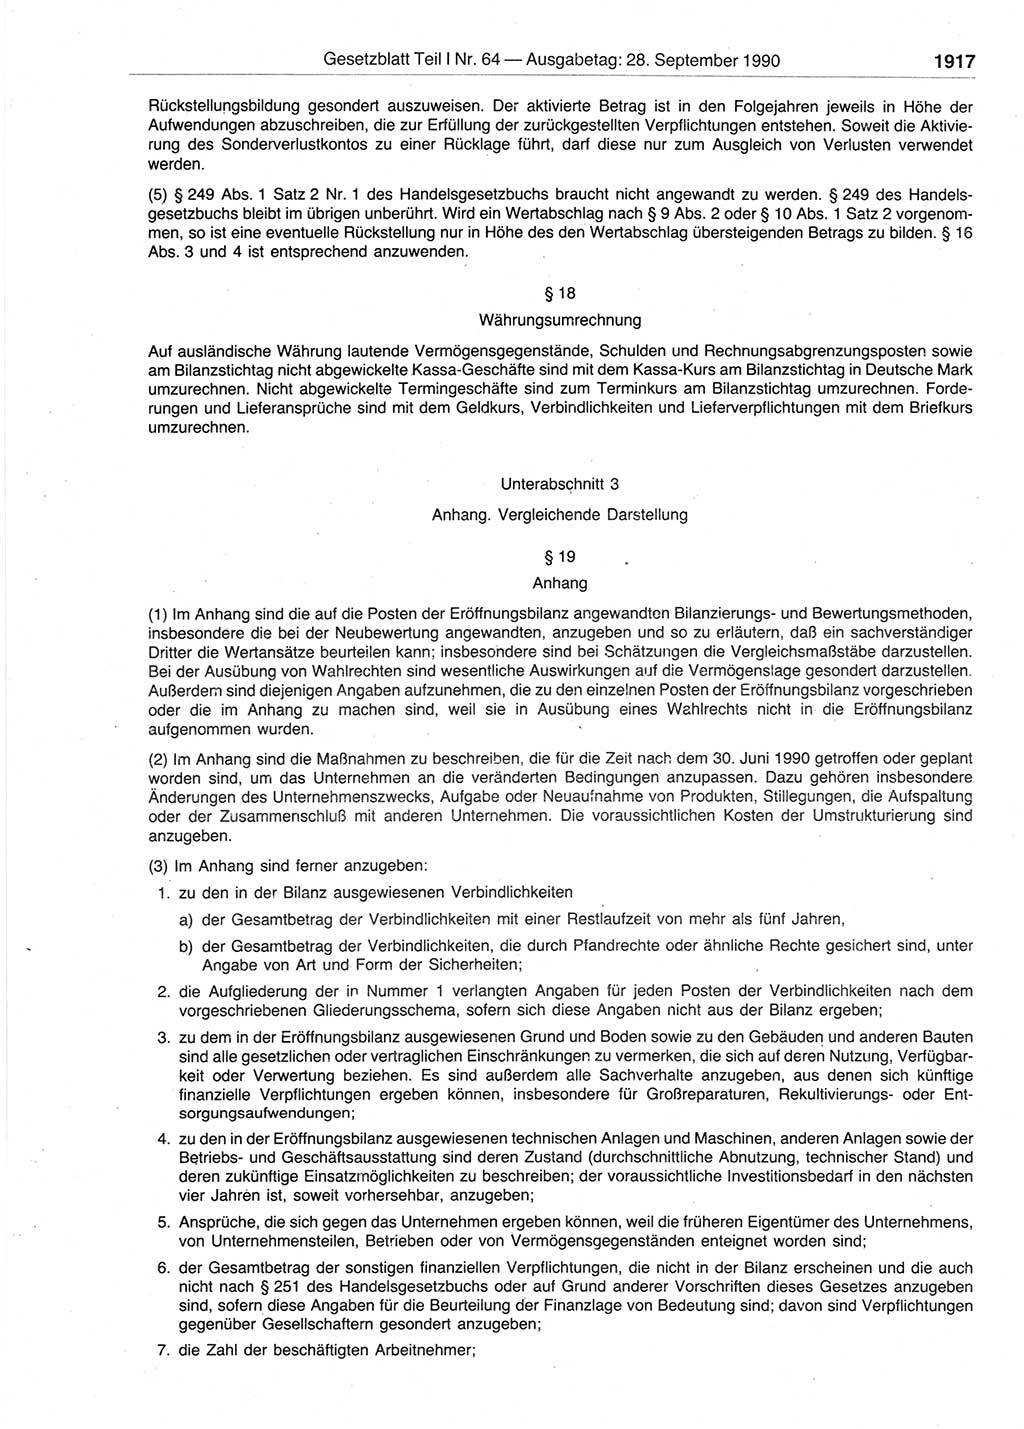 Gesetzblatt (GBl.) der Deutschen Demokratischen Republik (DDR) Teil Ⅰ 1990, Seite 1917 (GBl. DDR Ⅰ 1990, S. 1917)